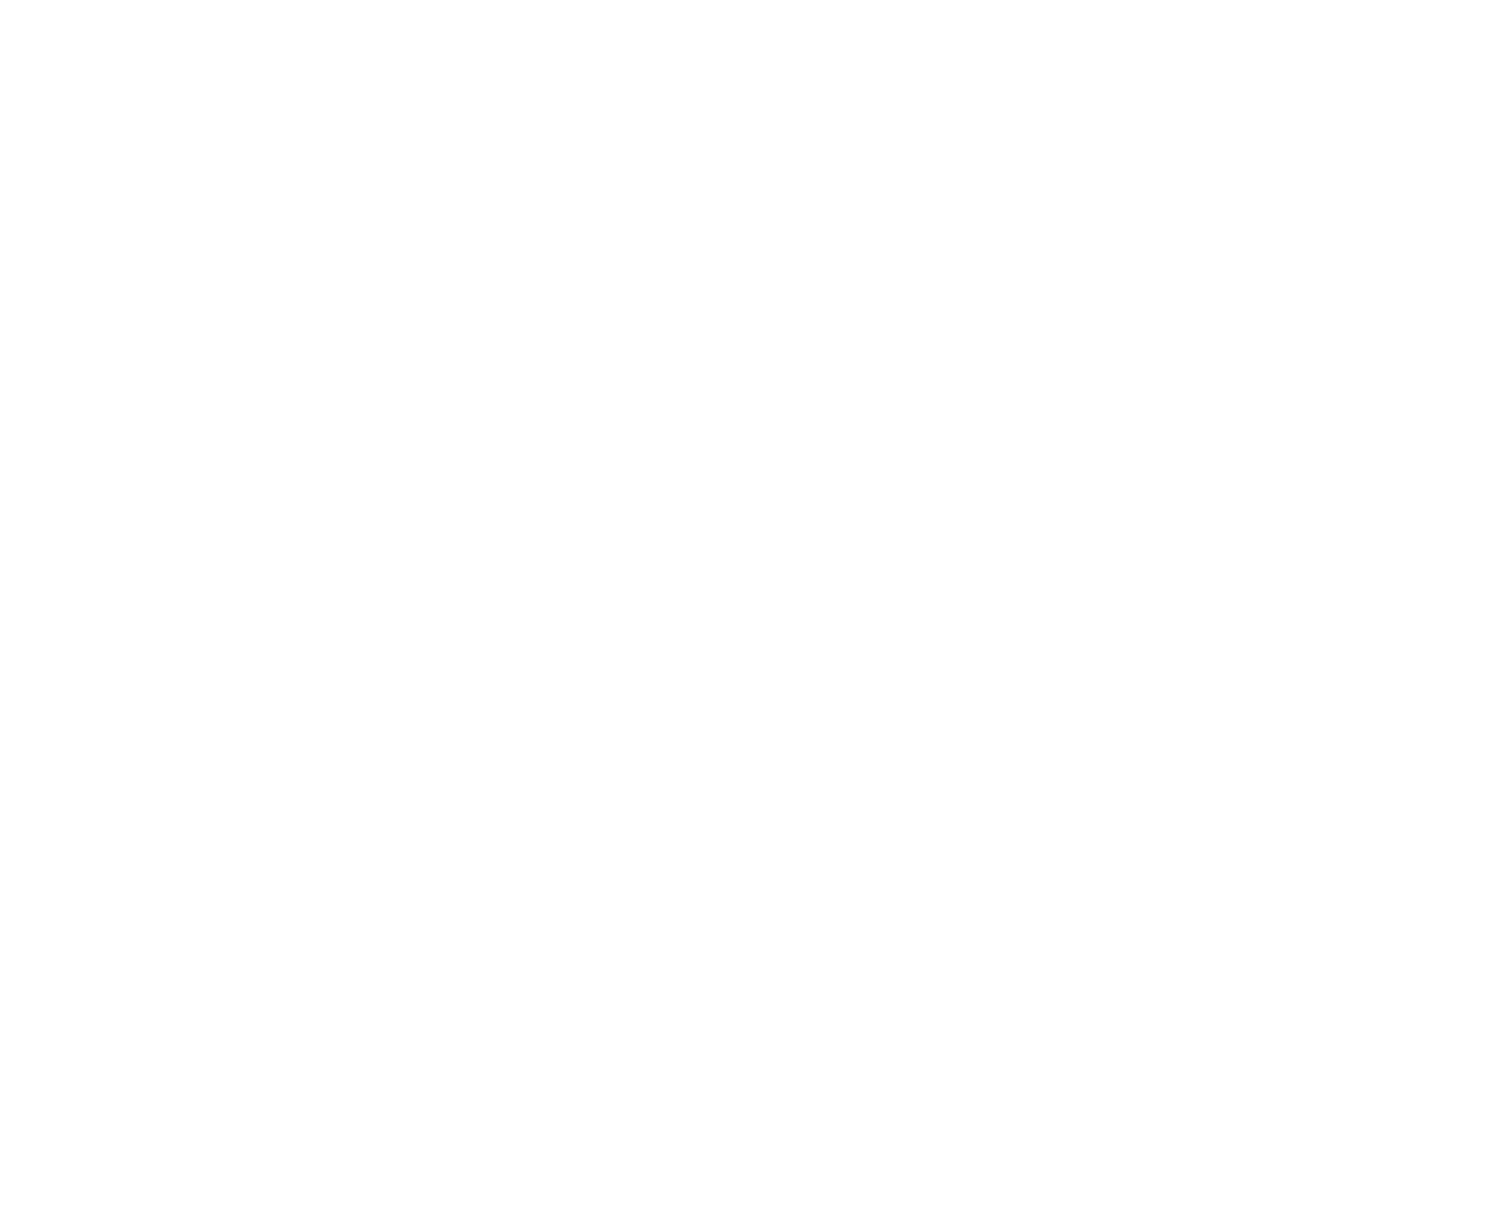 Zordix logo for dark backgrounds (transparent PNG)